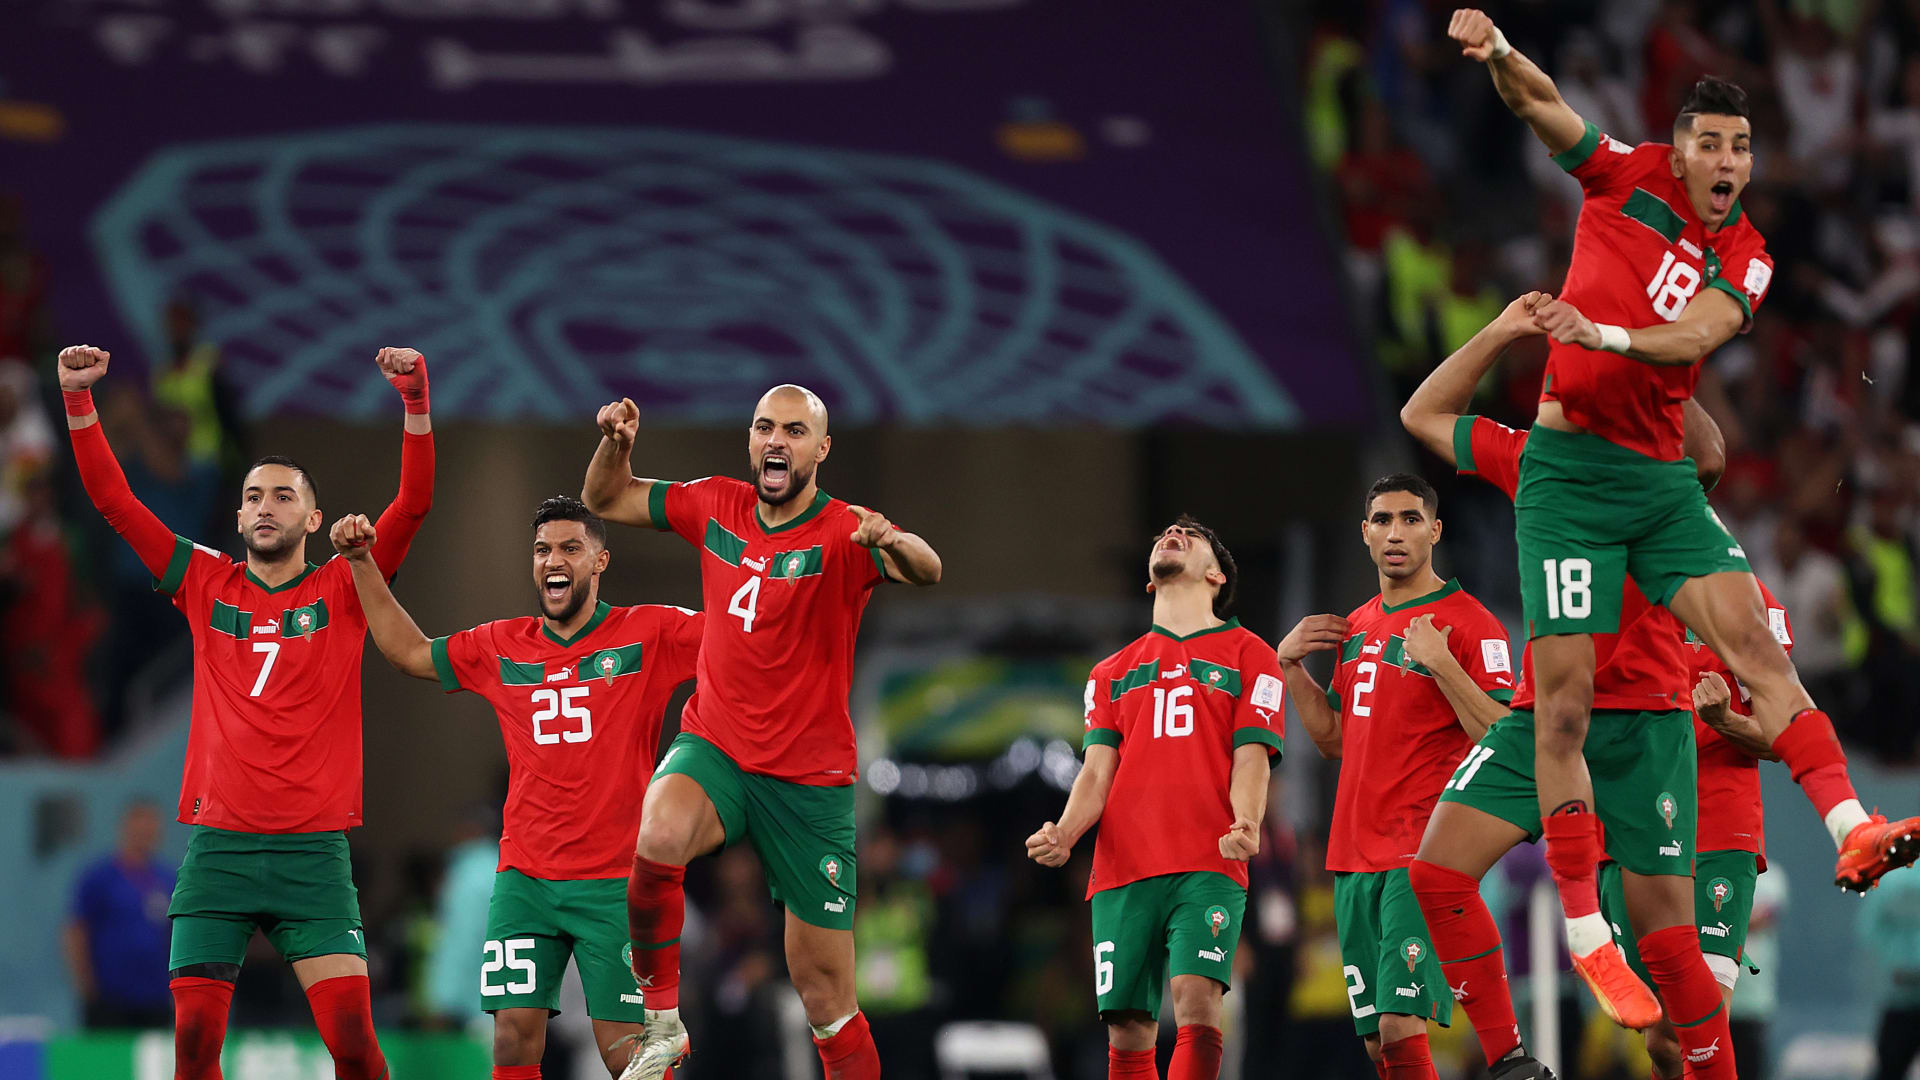 المغرب في نصف النهائي.. هكذا تغلب الركراكي على البرتغال وكتب السطر الأخير لرونالدو في المونديال